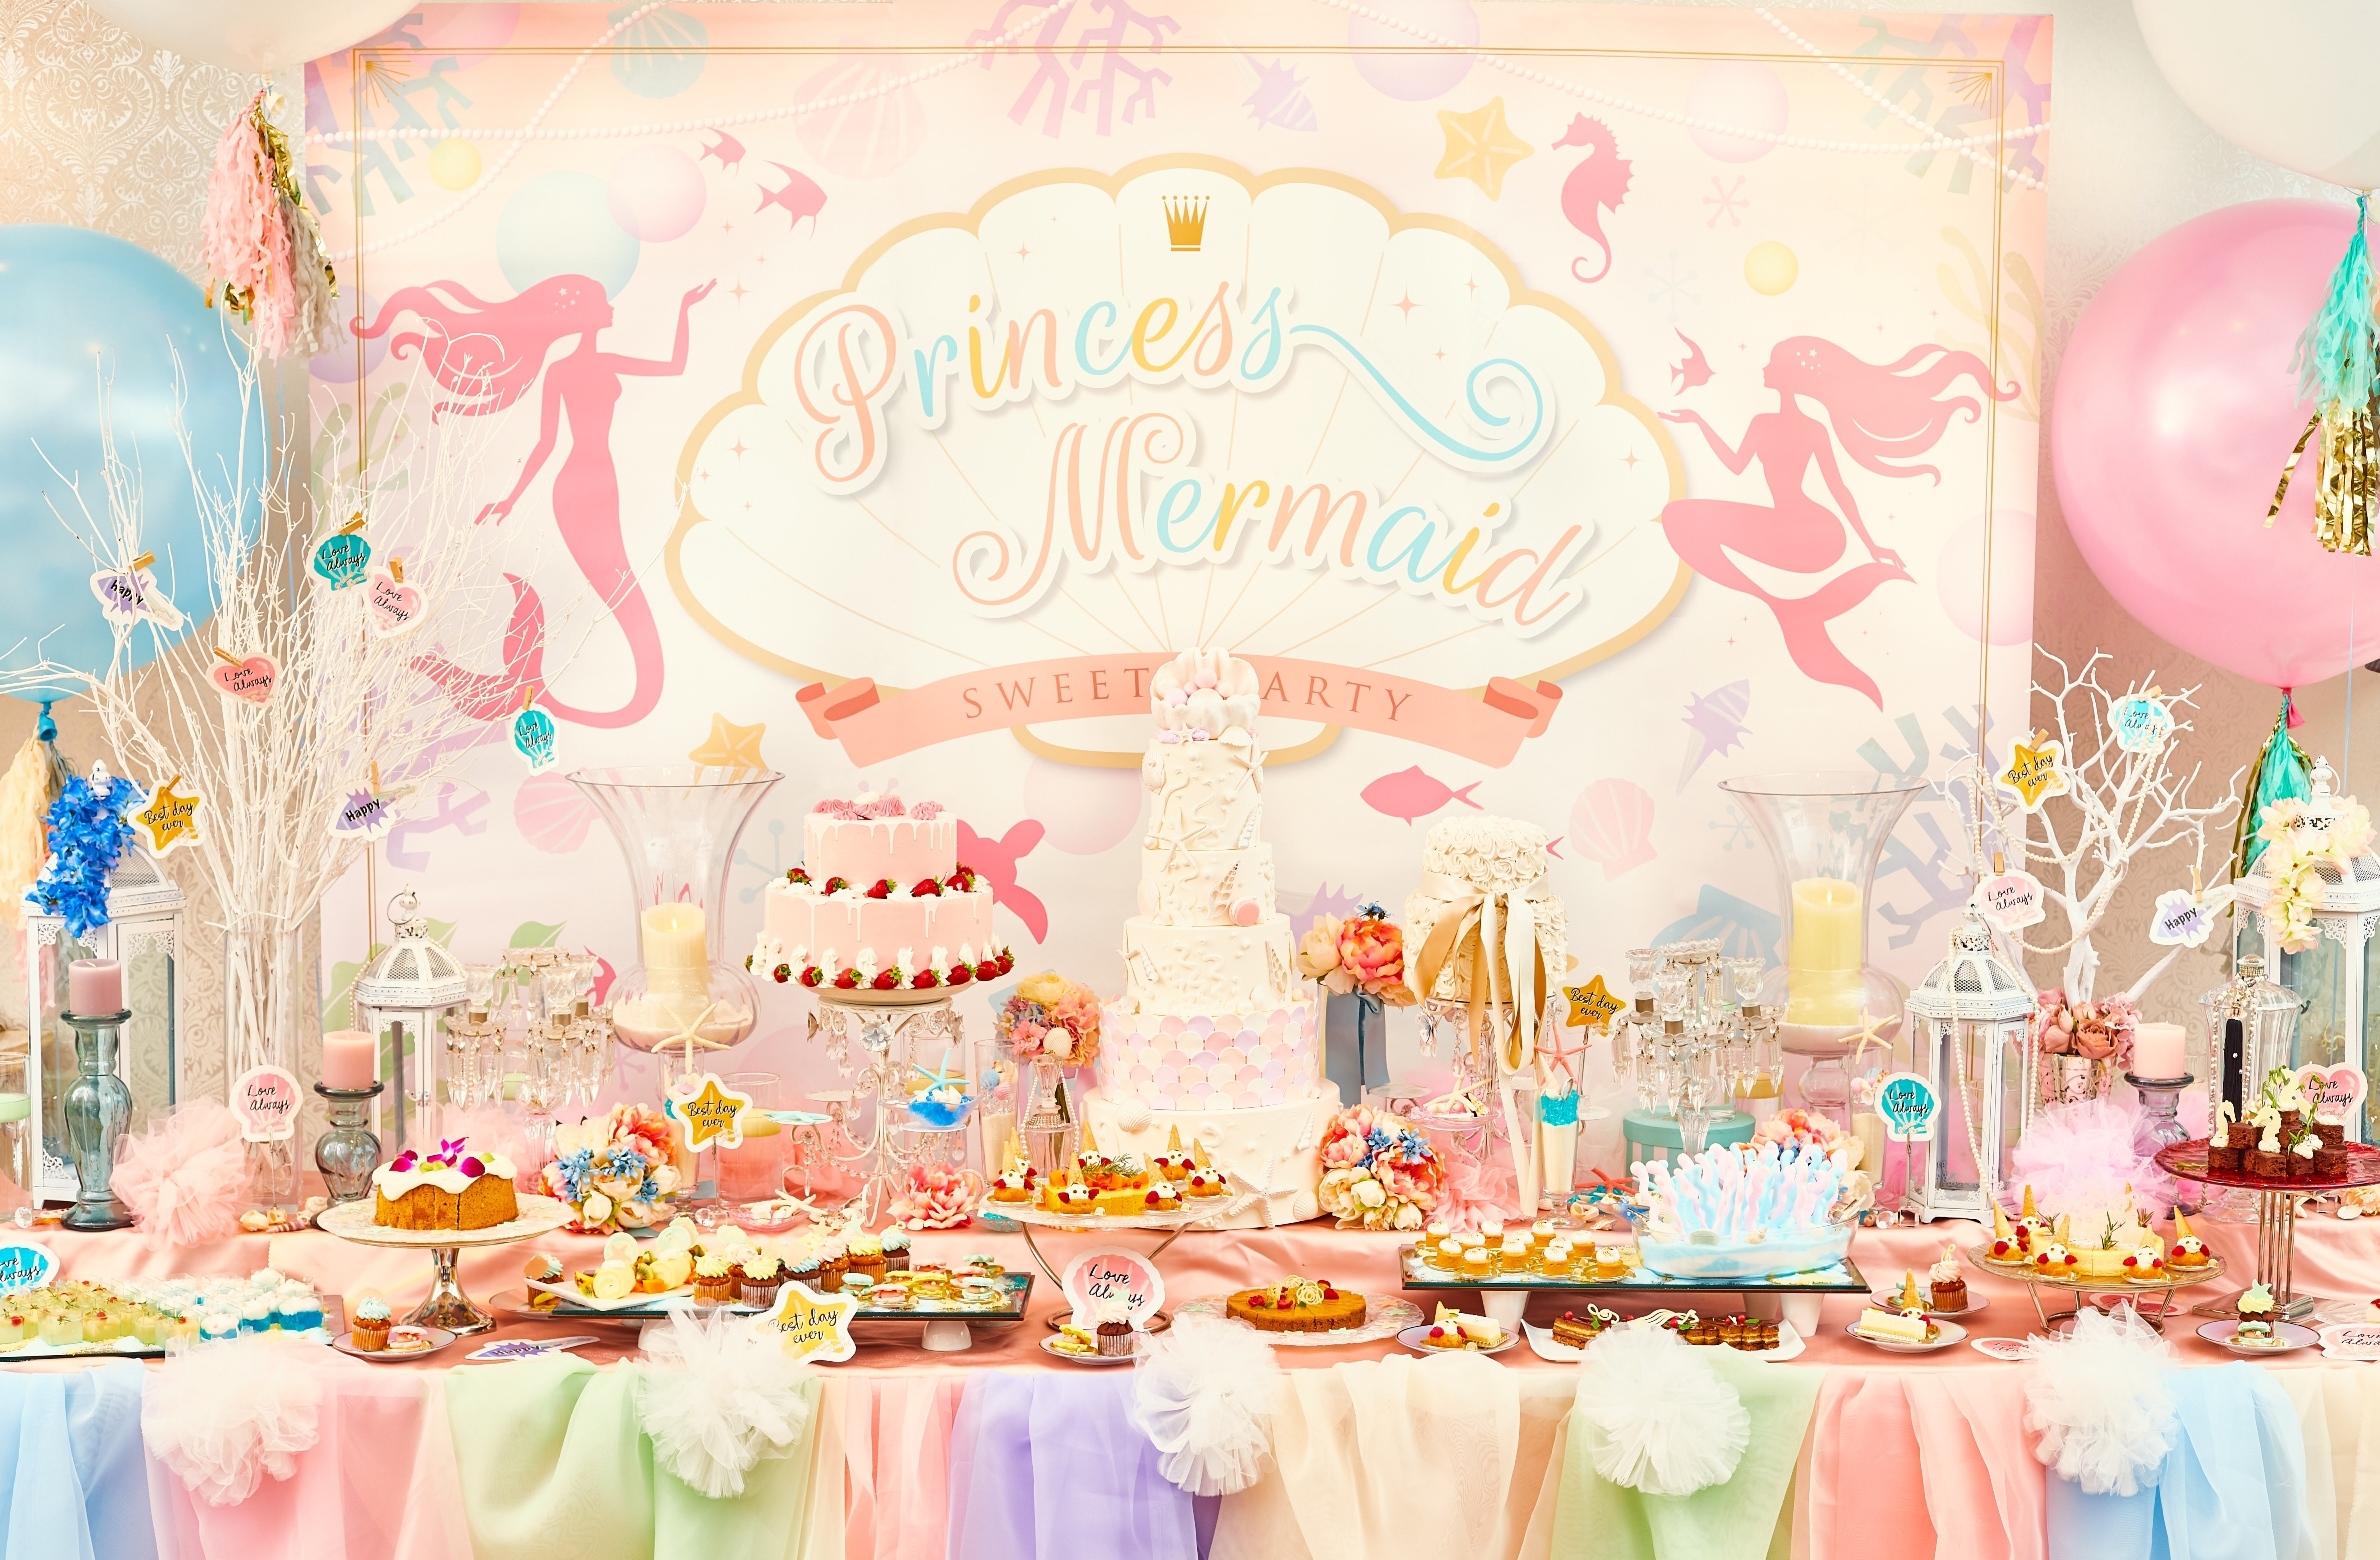 デザートブッフェ『プリンセス・マーメイドのスイーツパーティー』“人魚姫”がテーマのスイーツとシーフードたっぷりのお料理が食べ放題